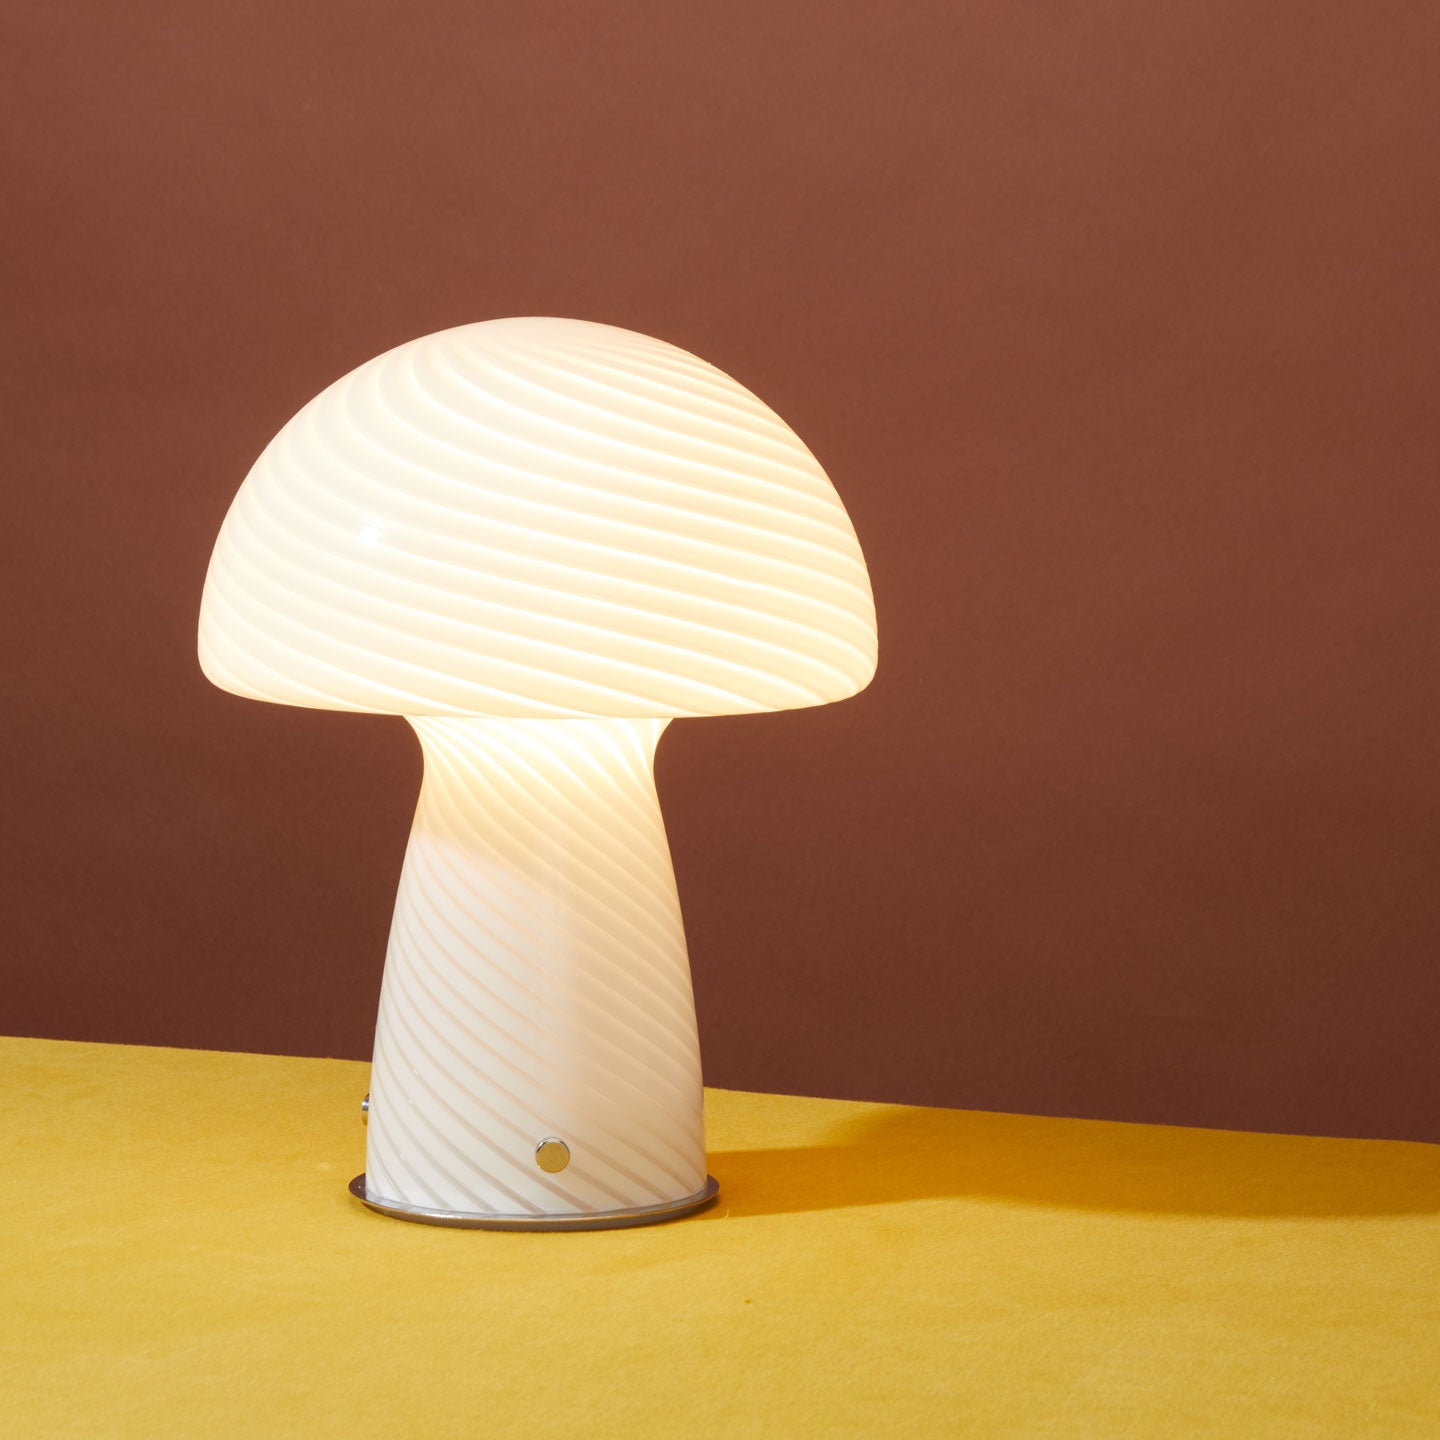 Glass Tall Mushroom Lamp - White